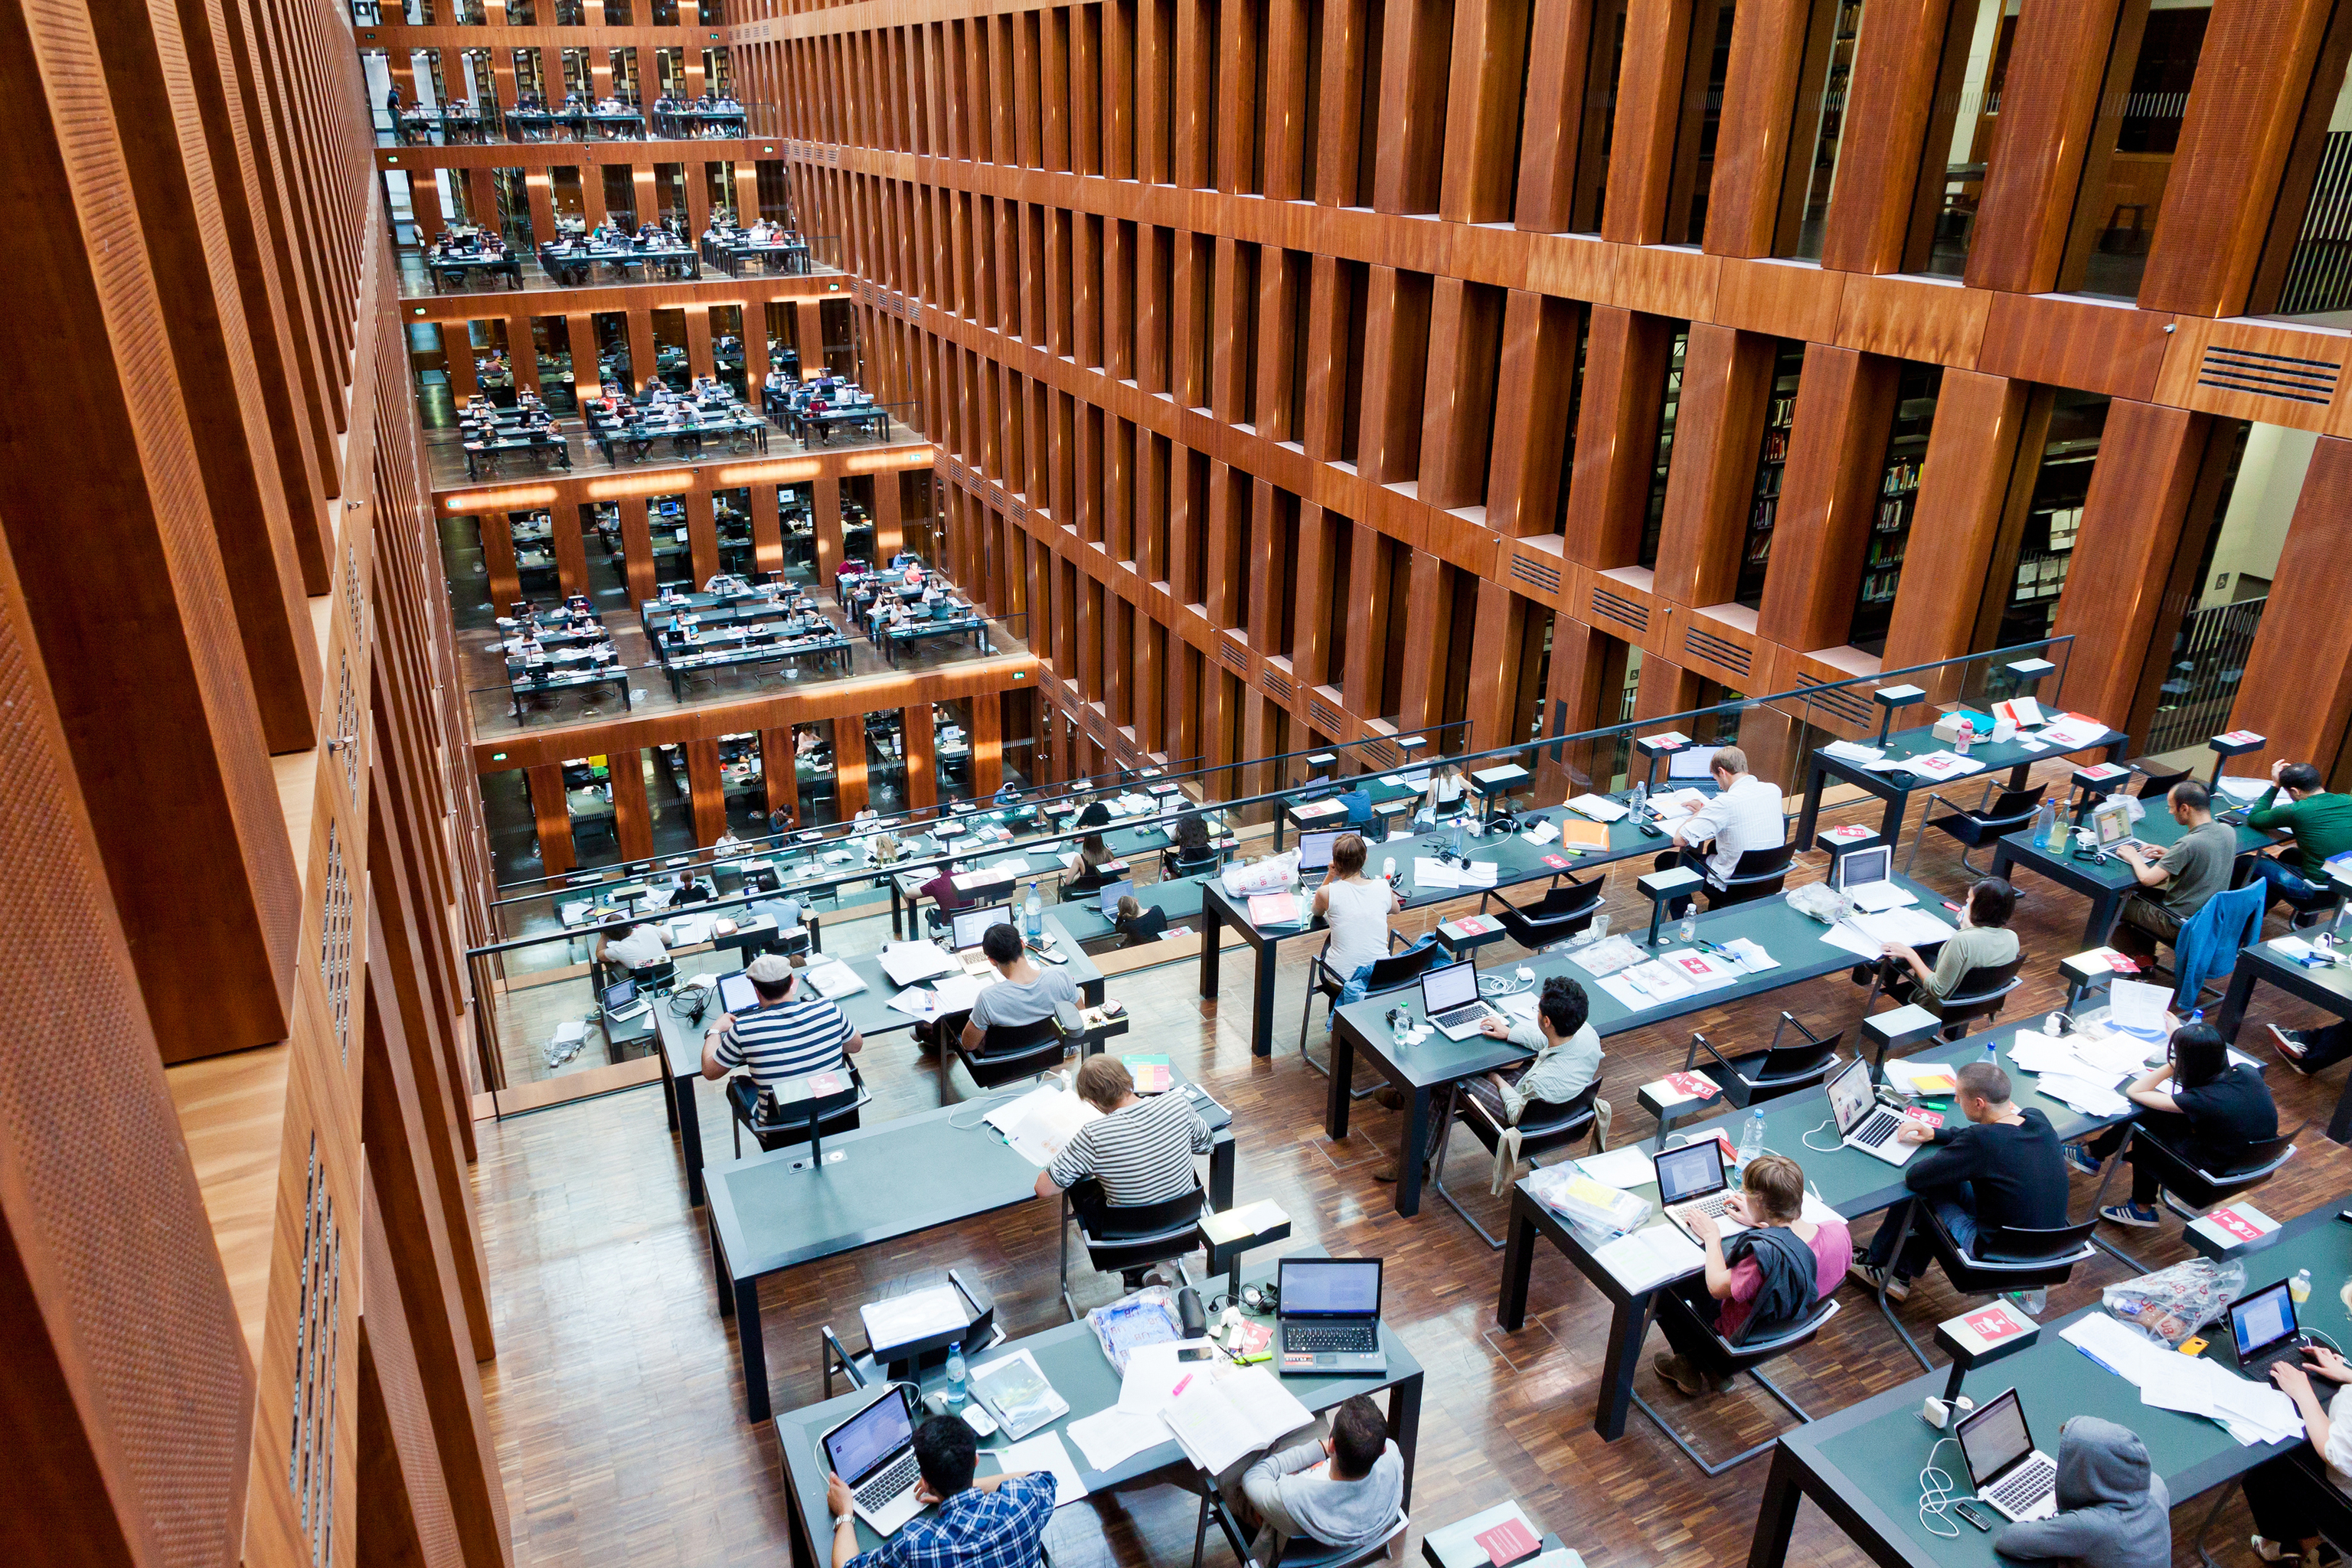 Imagen de la biblioteca de la Universidad Humboldt, en Berlín.